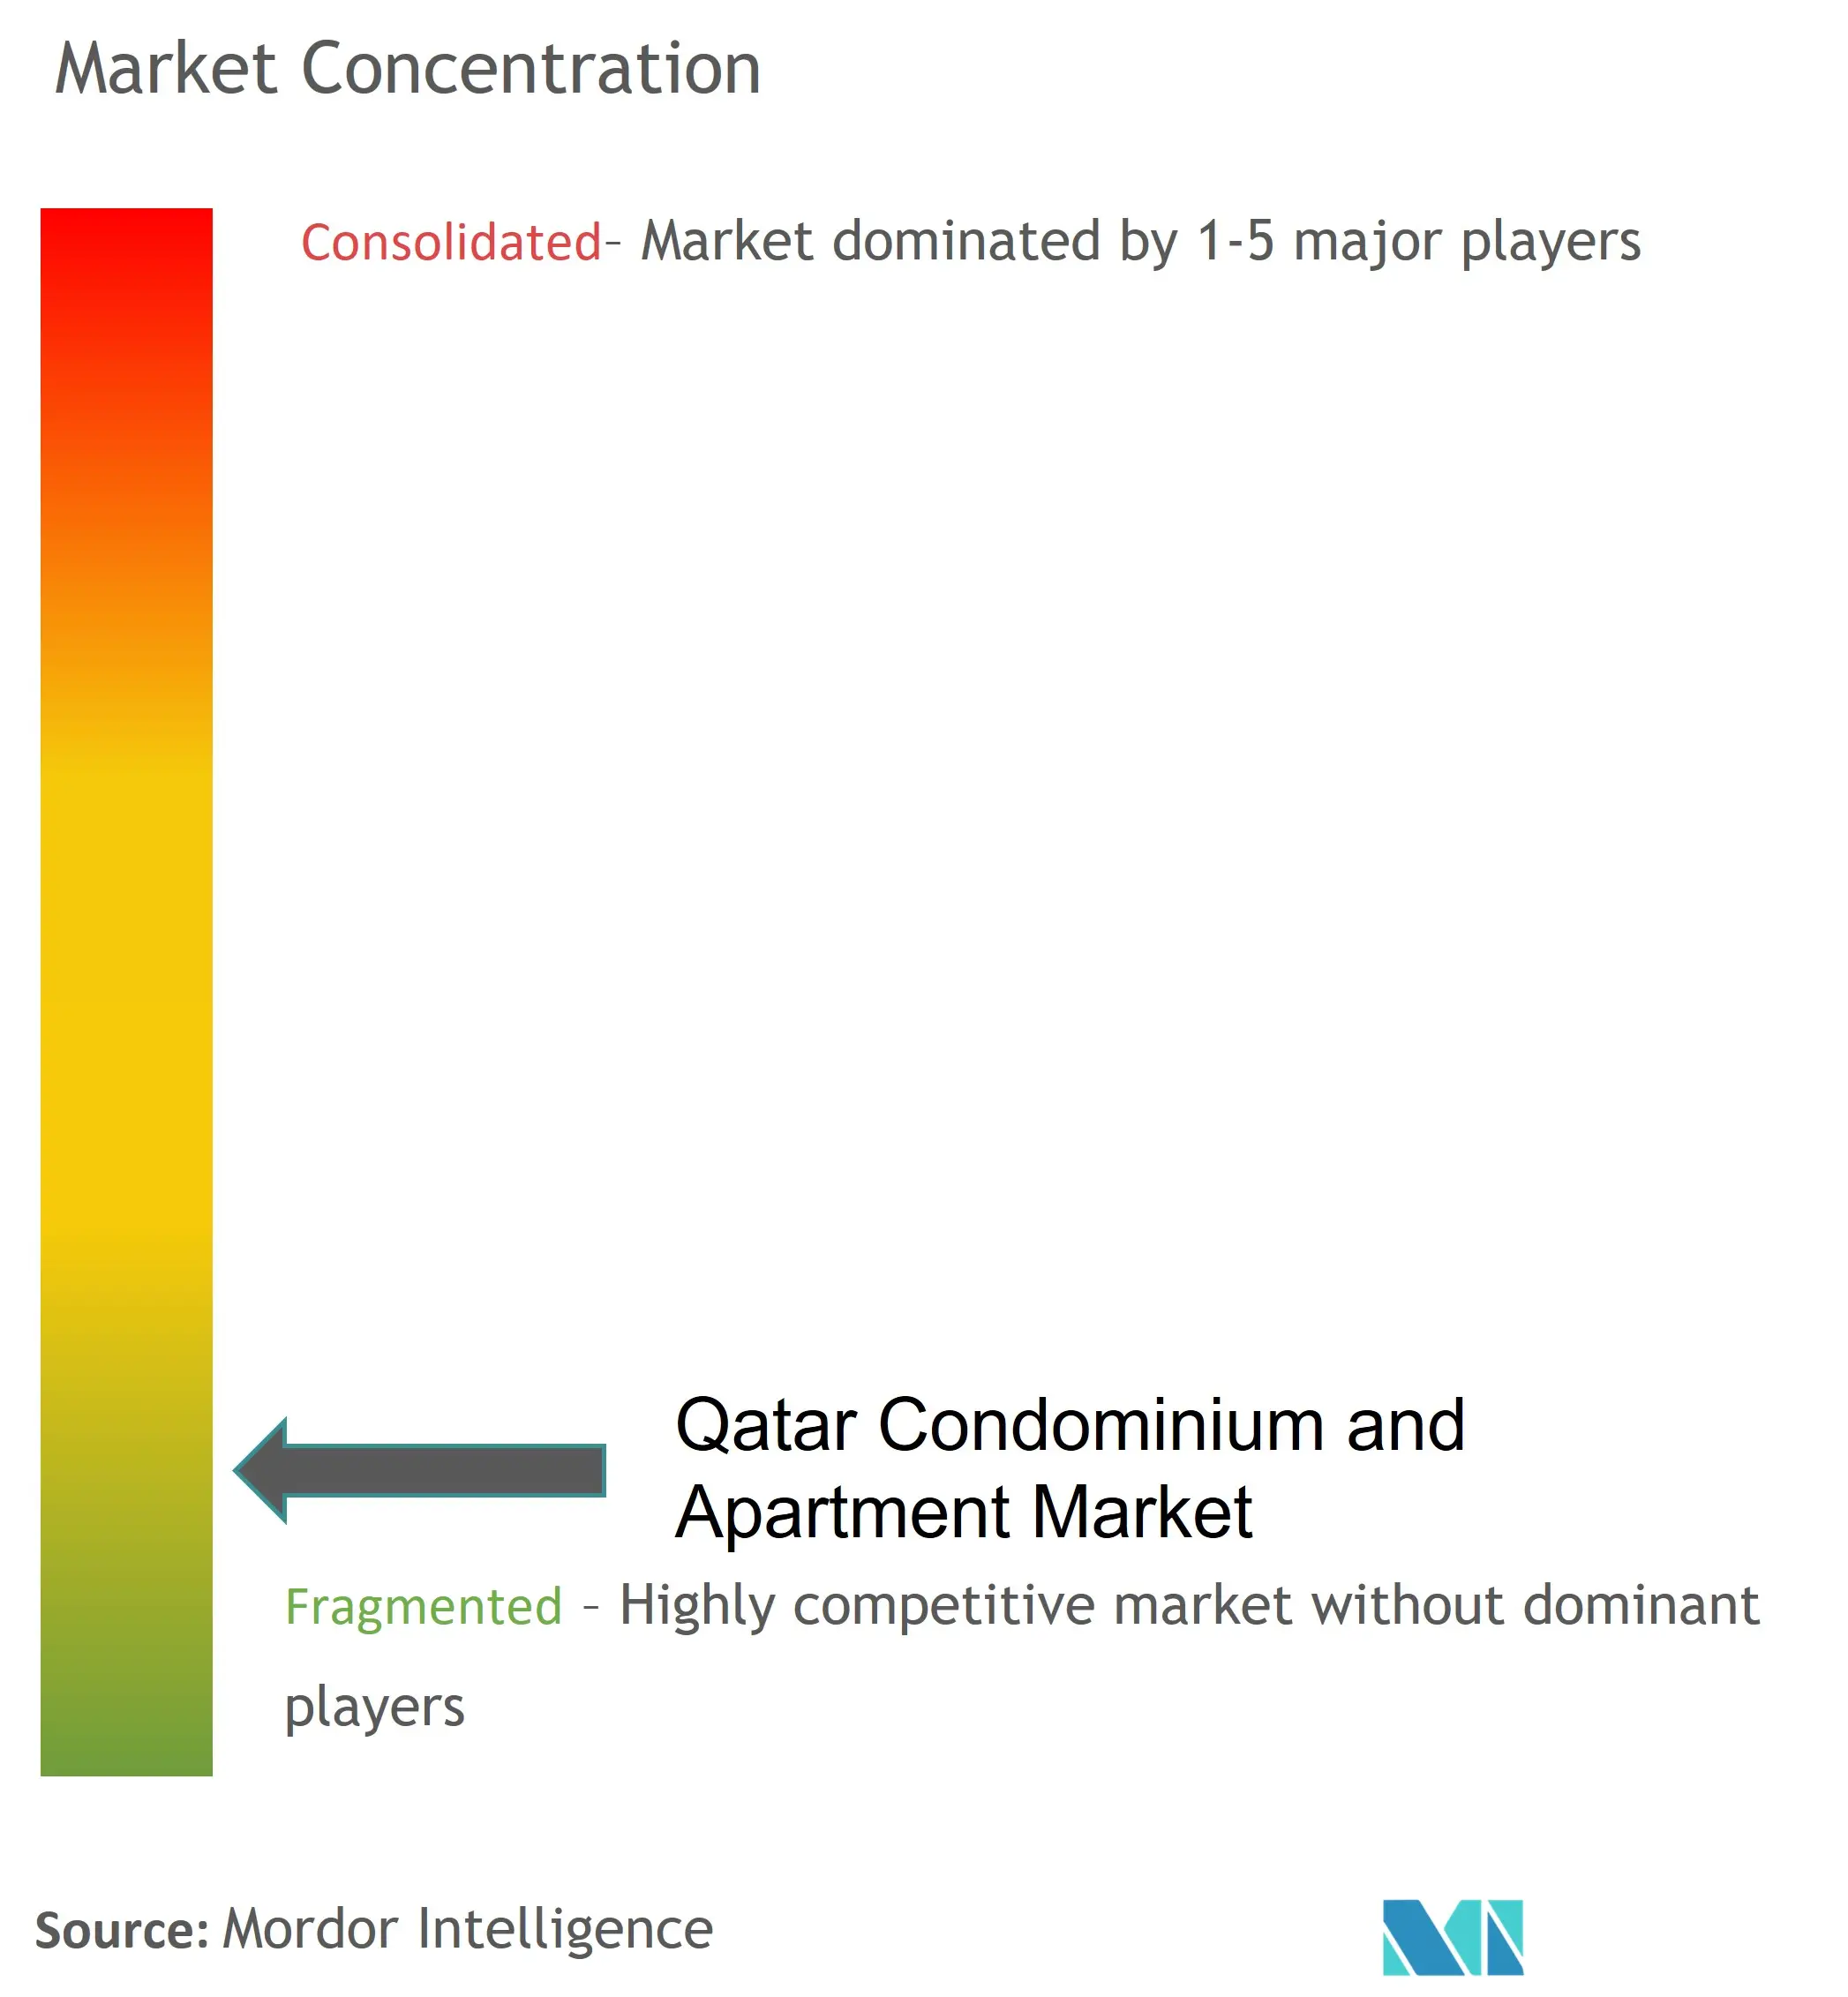 Qatar Condominium and Apartment Market Concentration